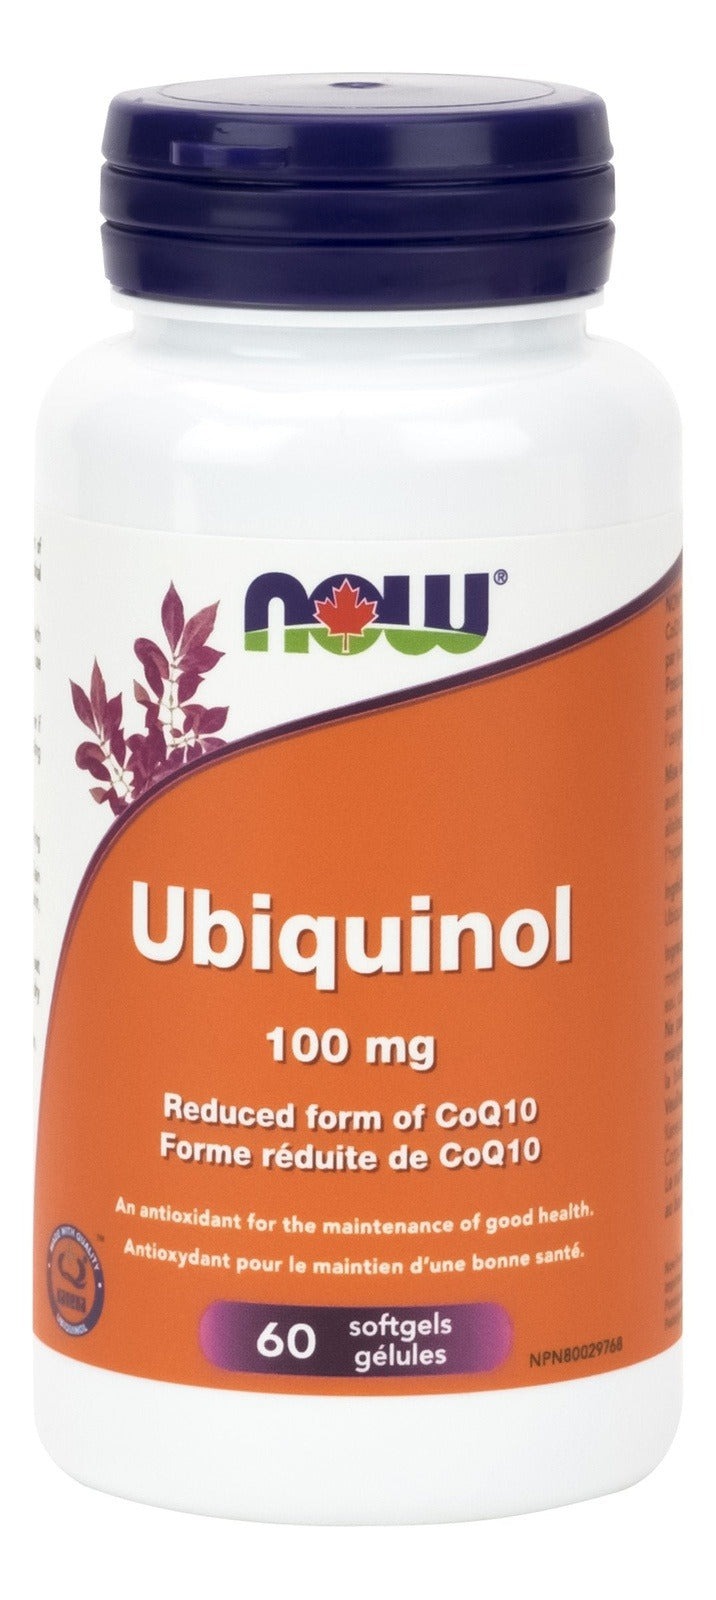 NOW Ubiquinol 100 mg 60 Softgels Image 1